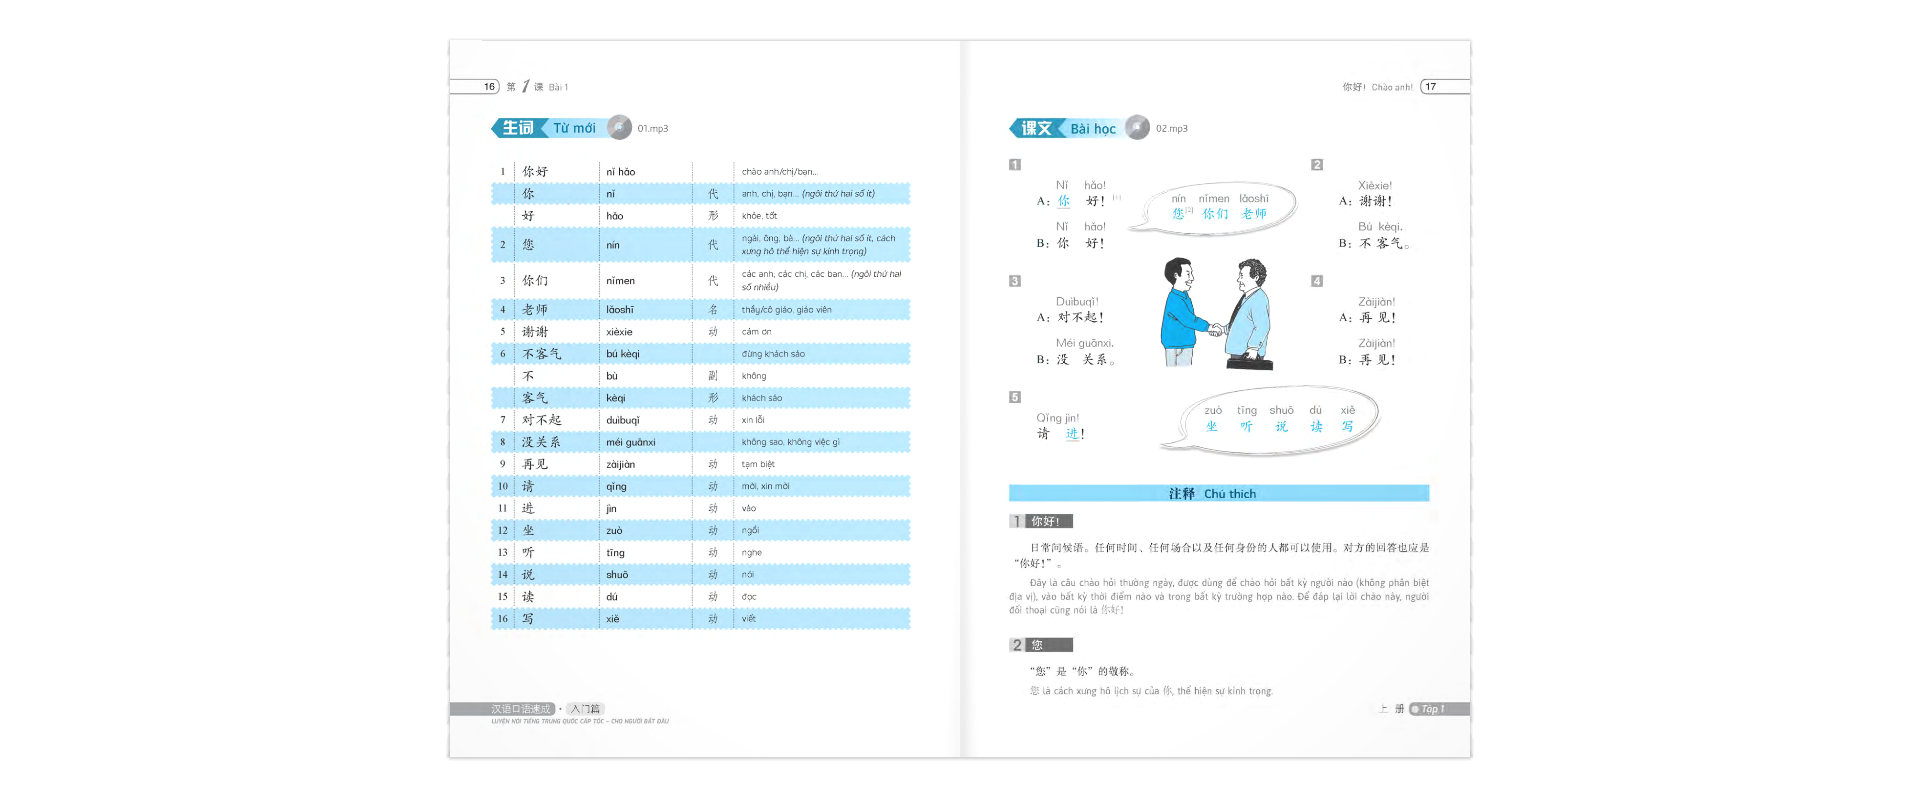 Luyện Nói Tiếng Trung Quốc Cấp Tốc Cho Người Bắt Đầu - Tập 1 Cd PDF